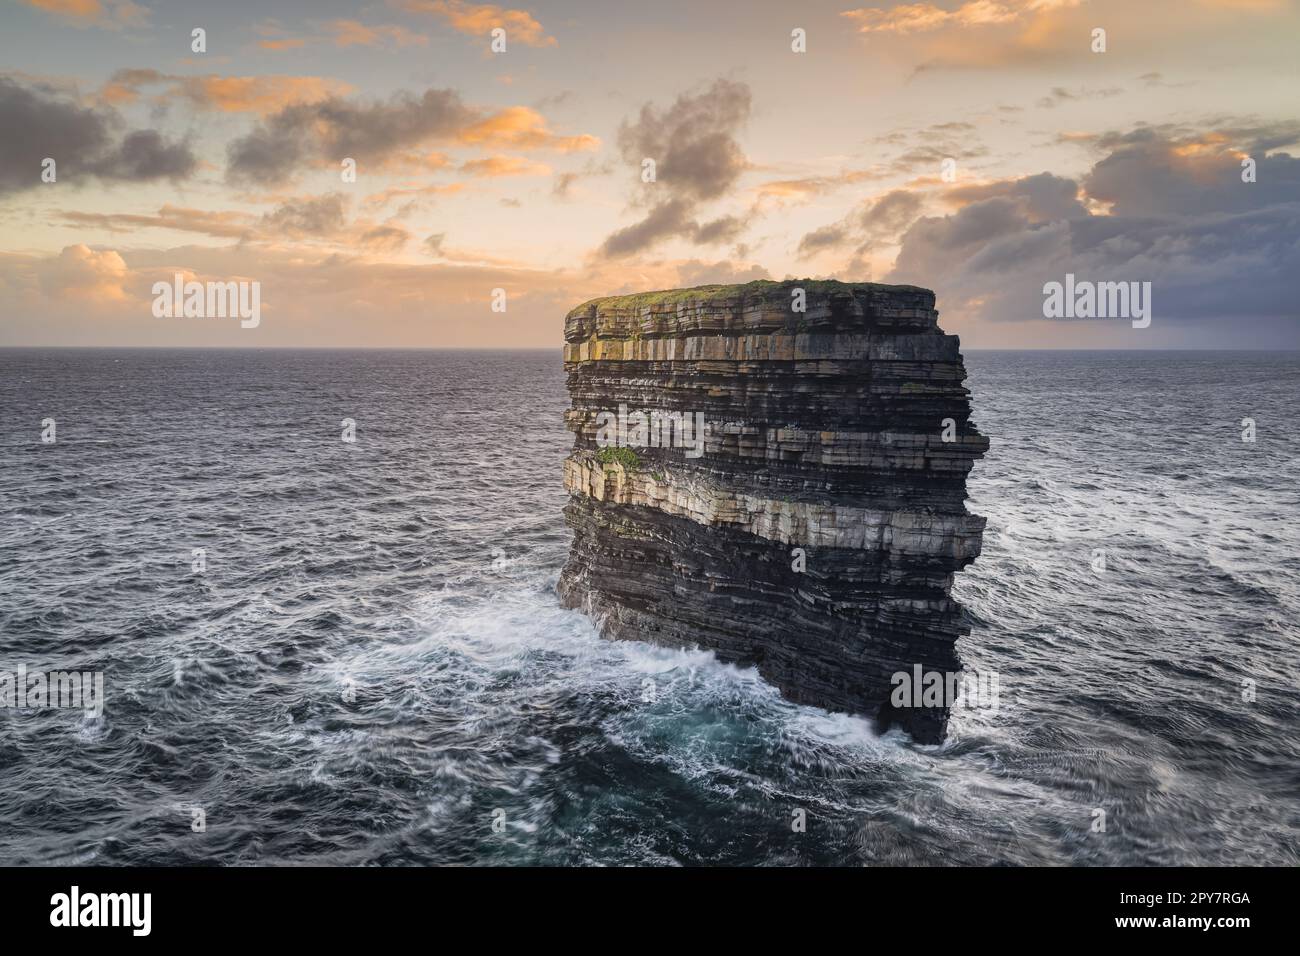 Pile de mer Downpatrick Head debout dans l'océan Atlantique, Irlande Banque D'Images